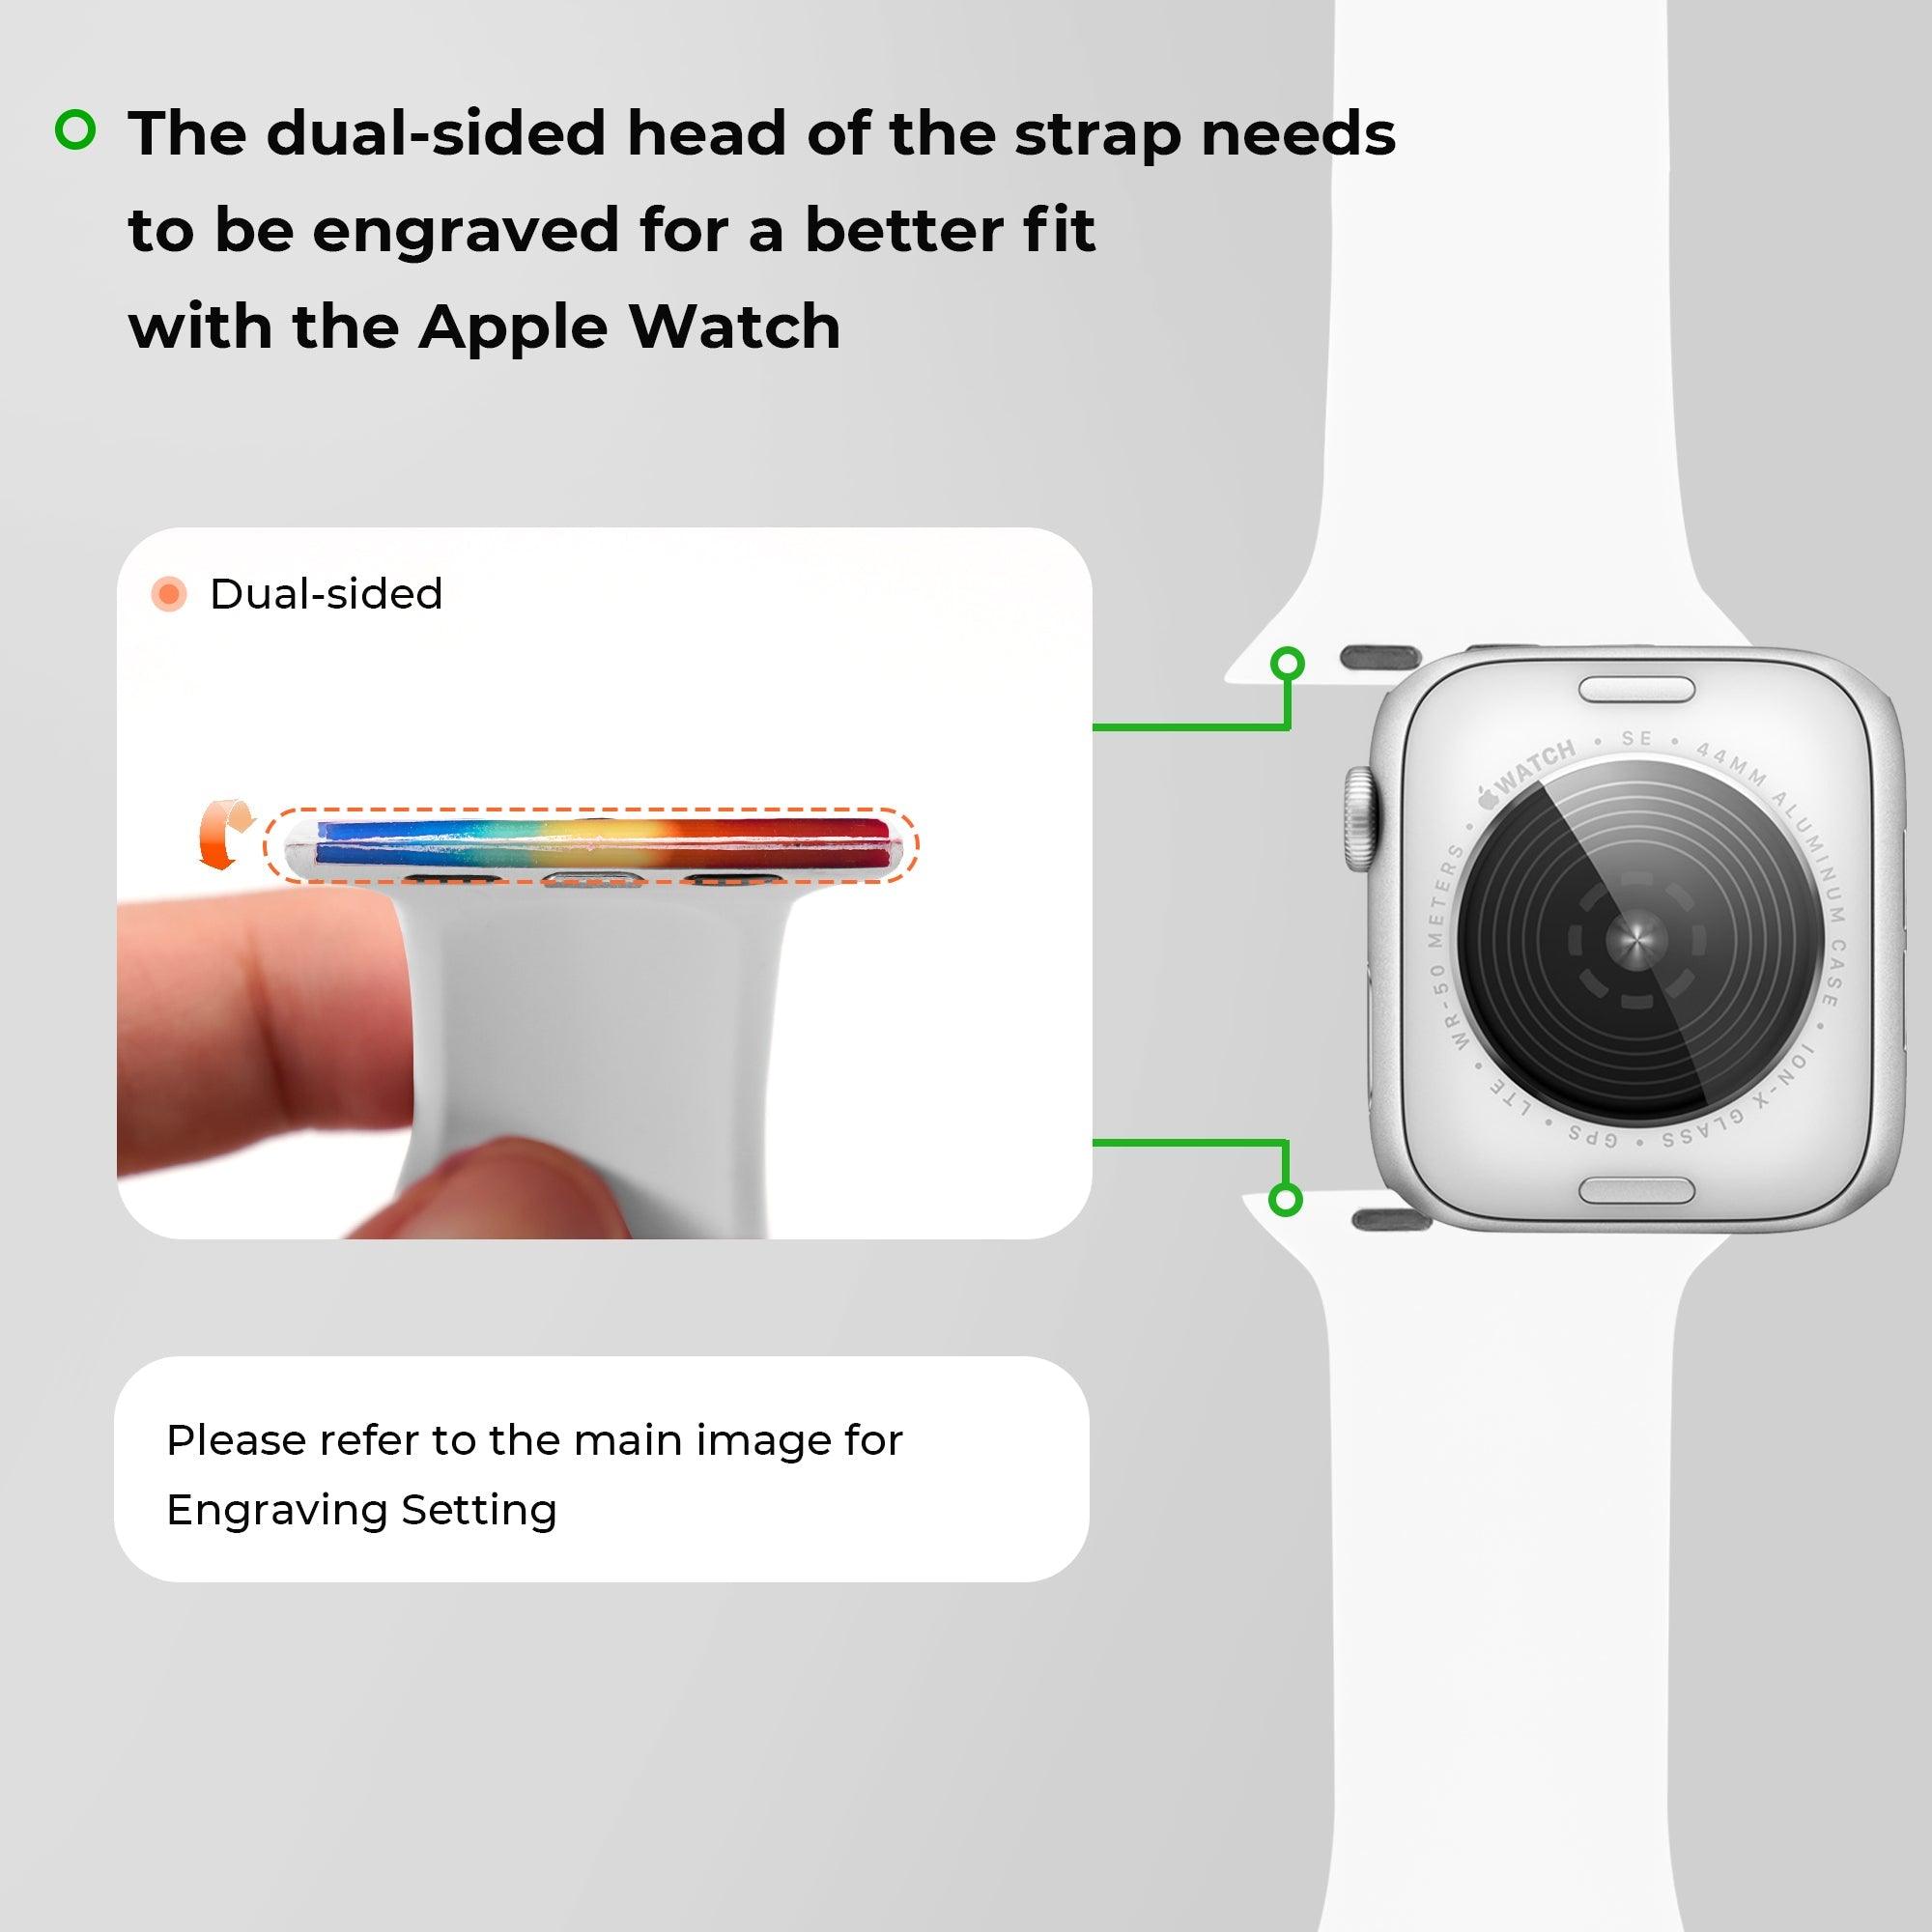 Silicone Apple Watch Bands avec Remplissage Arc-en-ciel à Graver (modèle classique) - xTool France Store